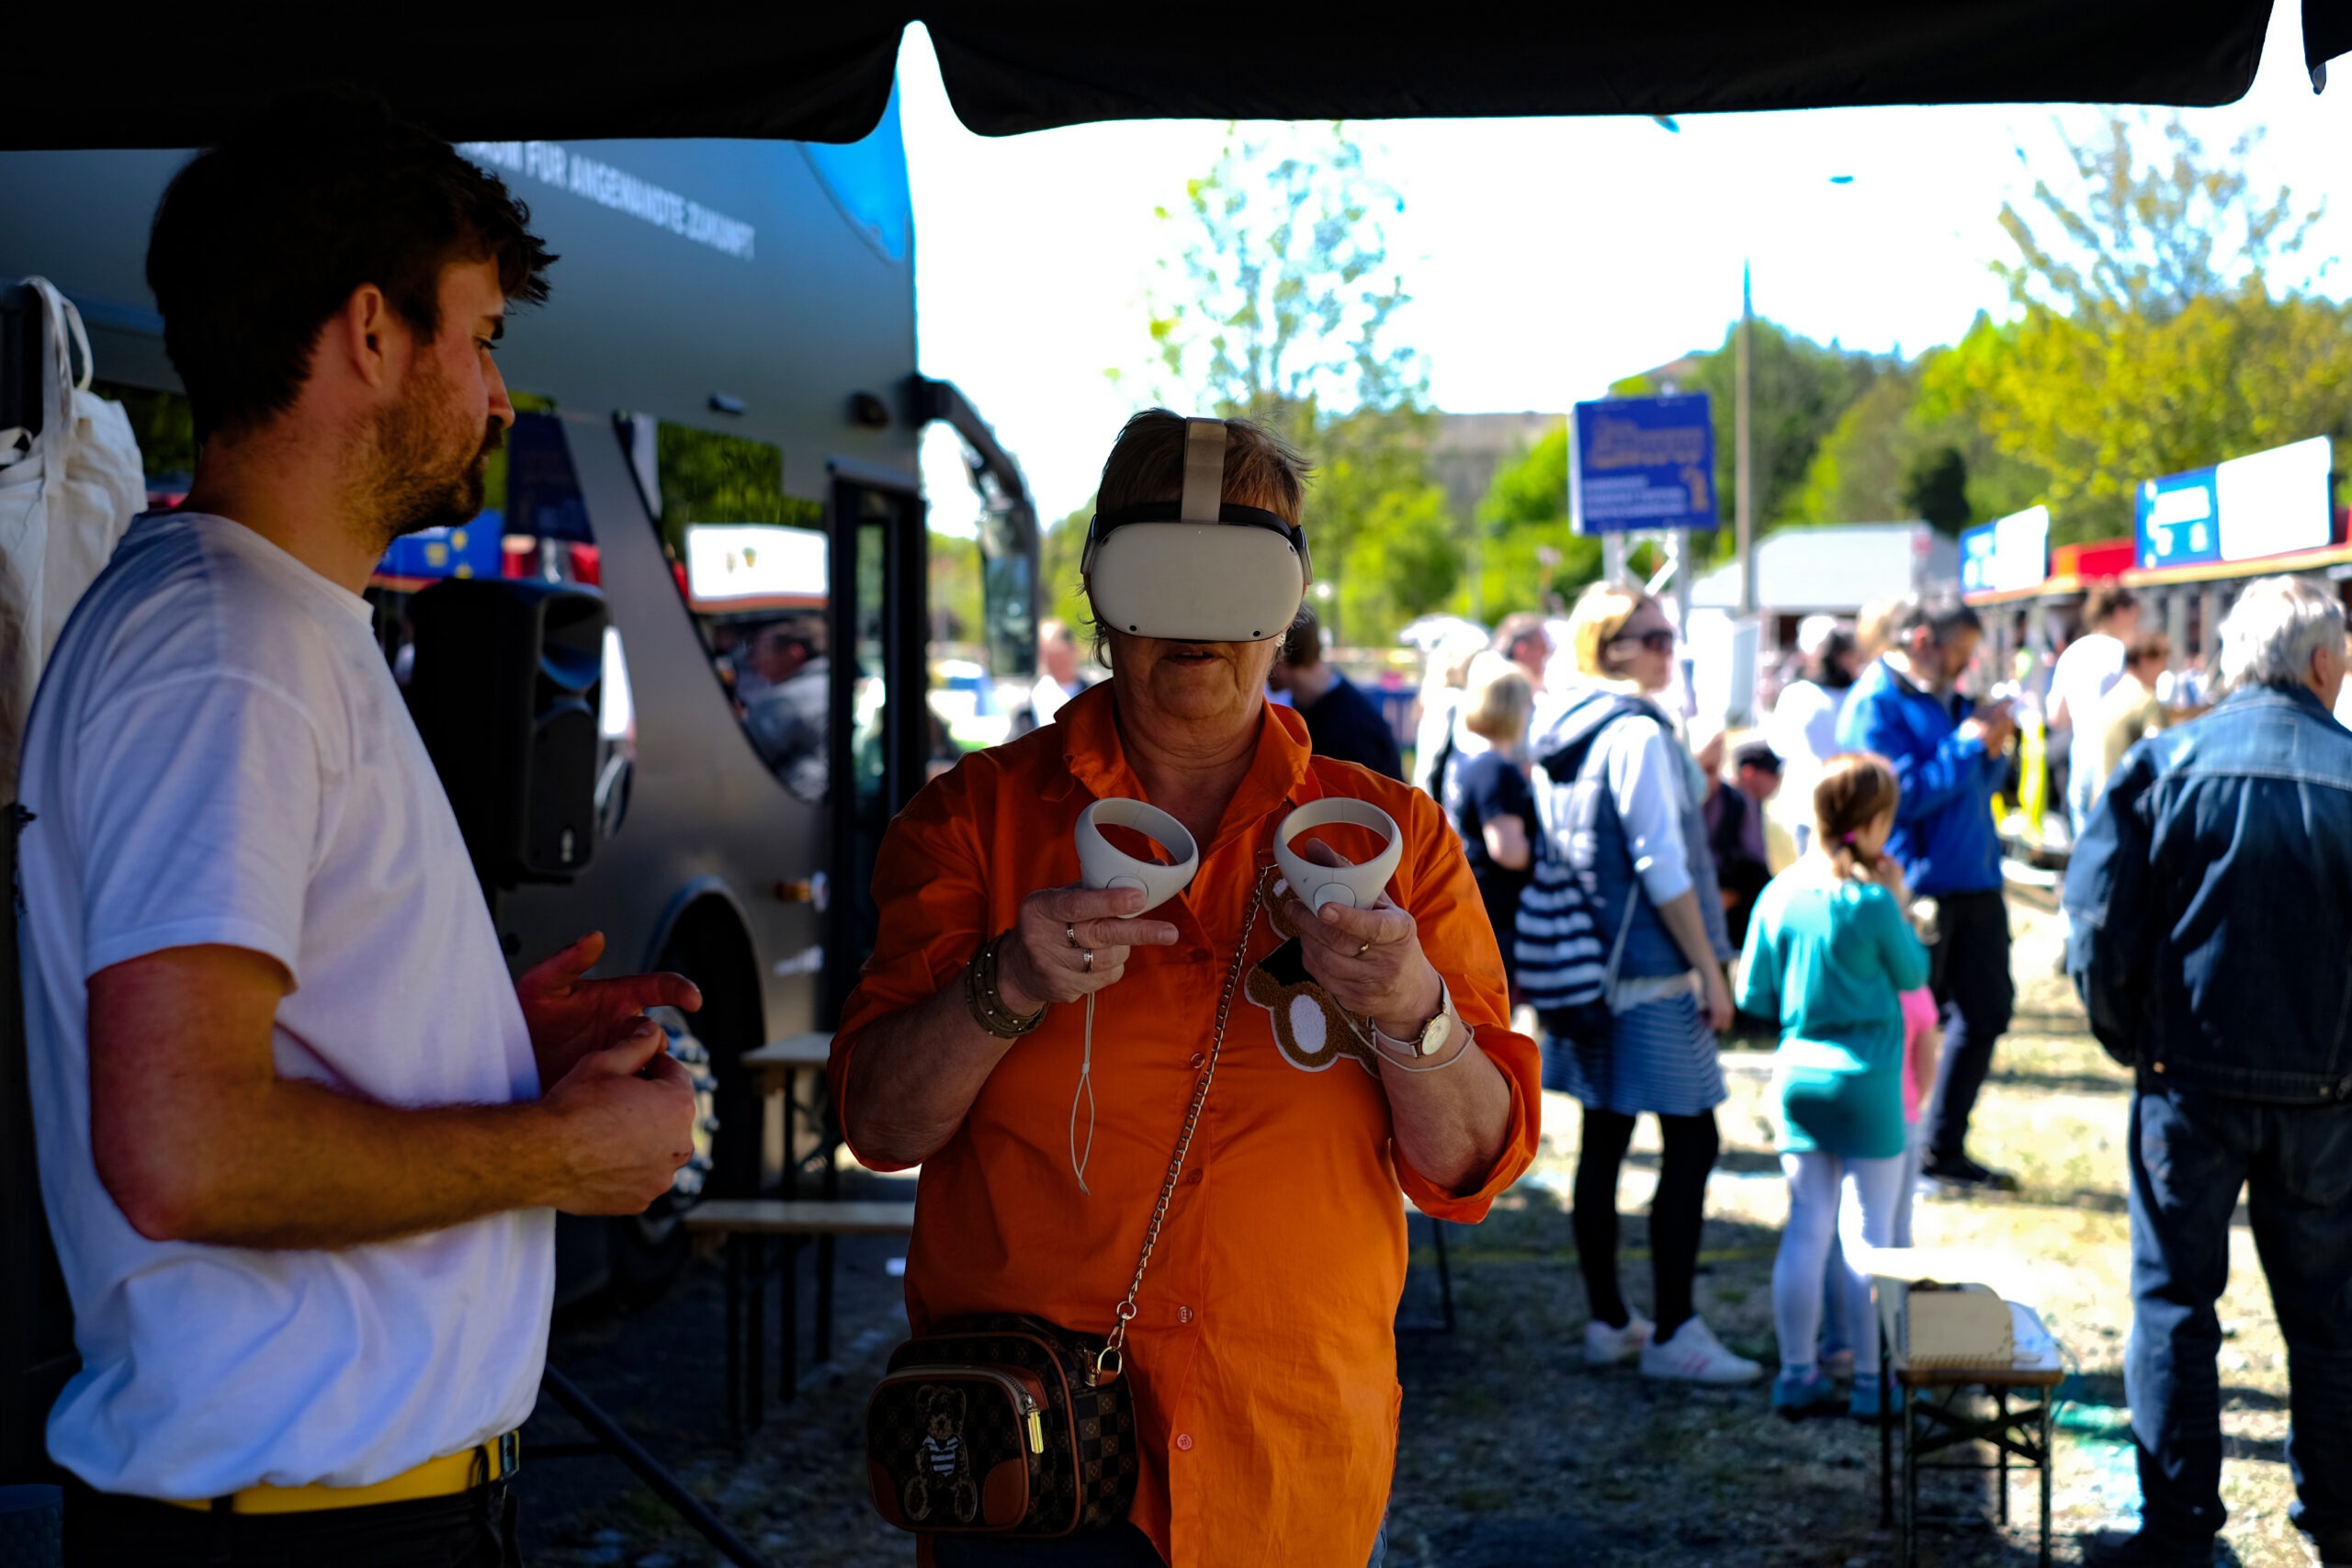 Eine Frau im orangenen Shirt probiert eine VR Brille aus